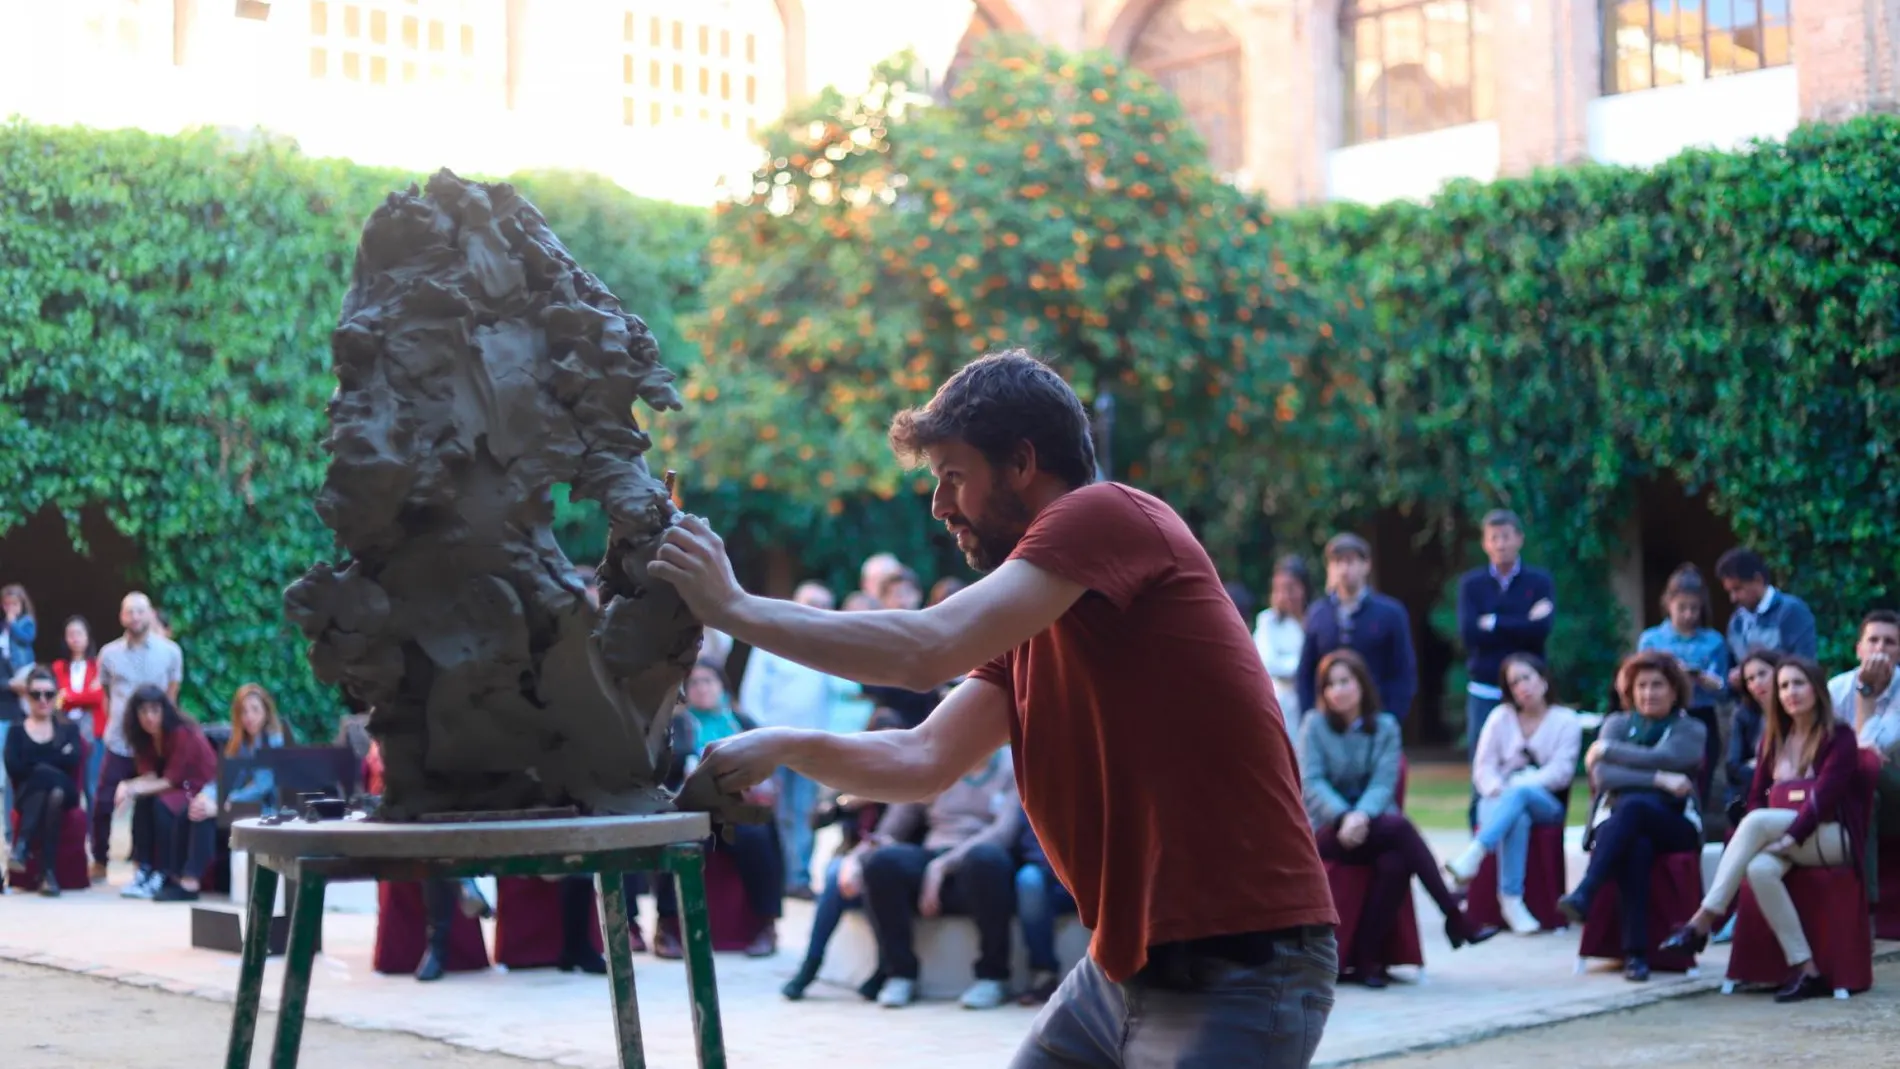 El escultor Martín Lagares realizó en directo la sesión “Modelando” / Foto: La Razón